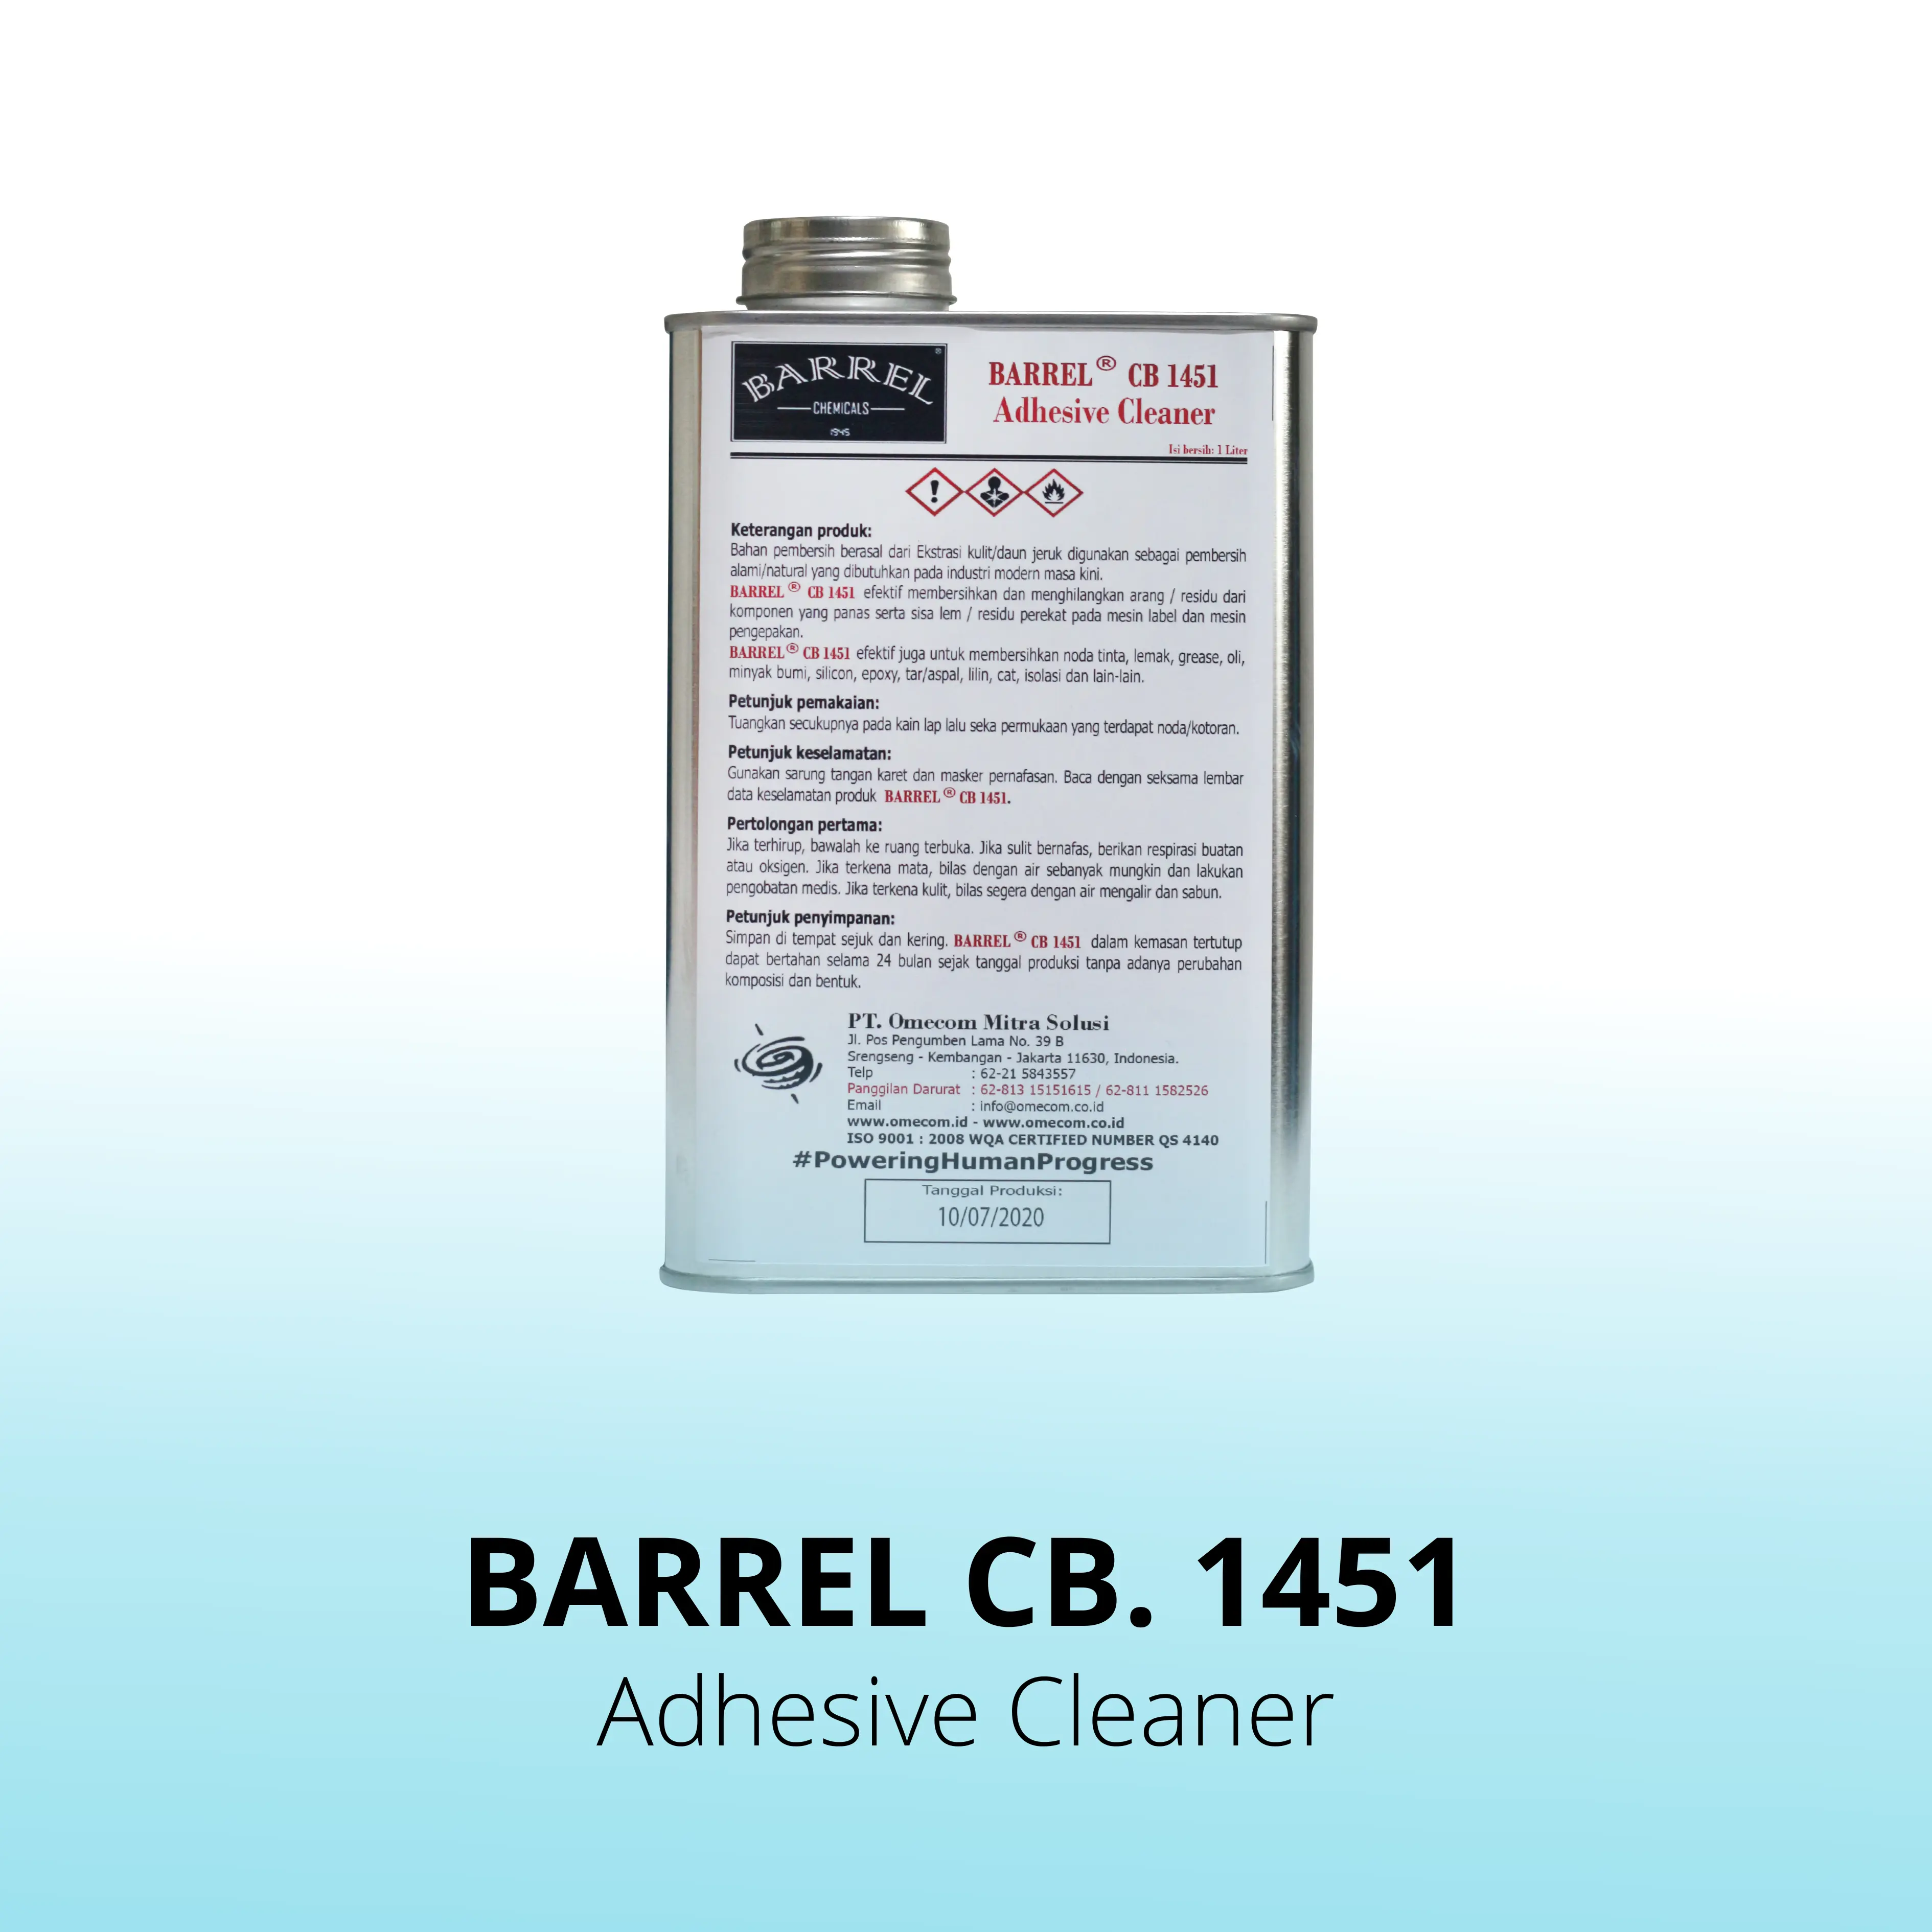 Barrel CB. 1451